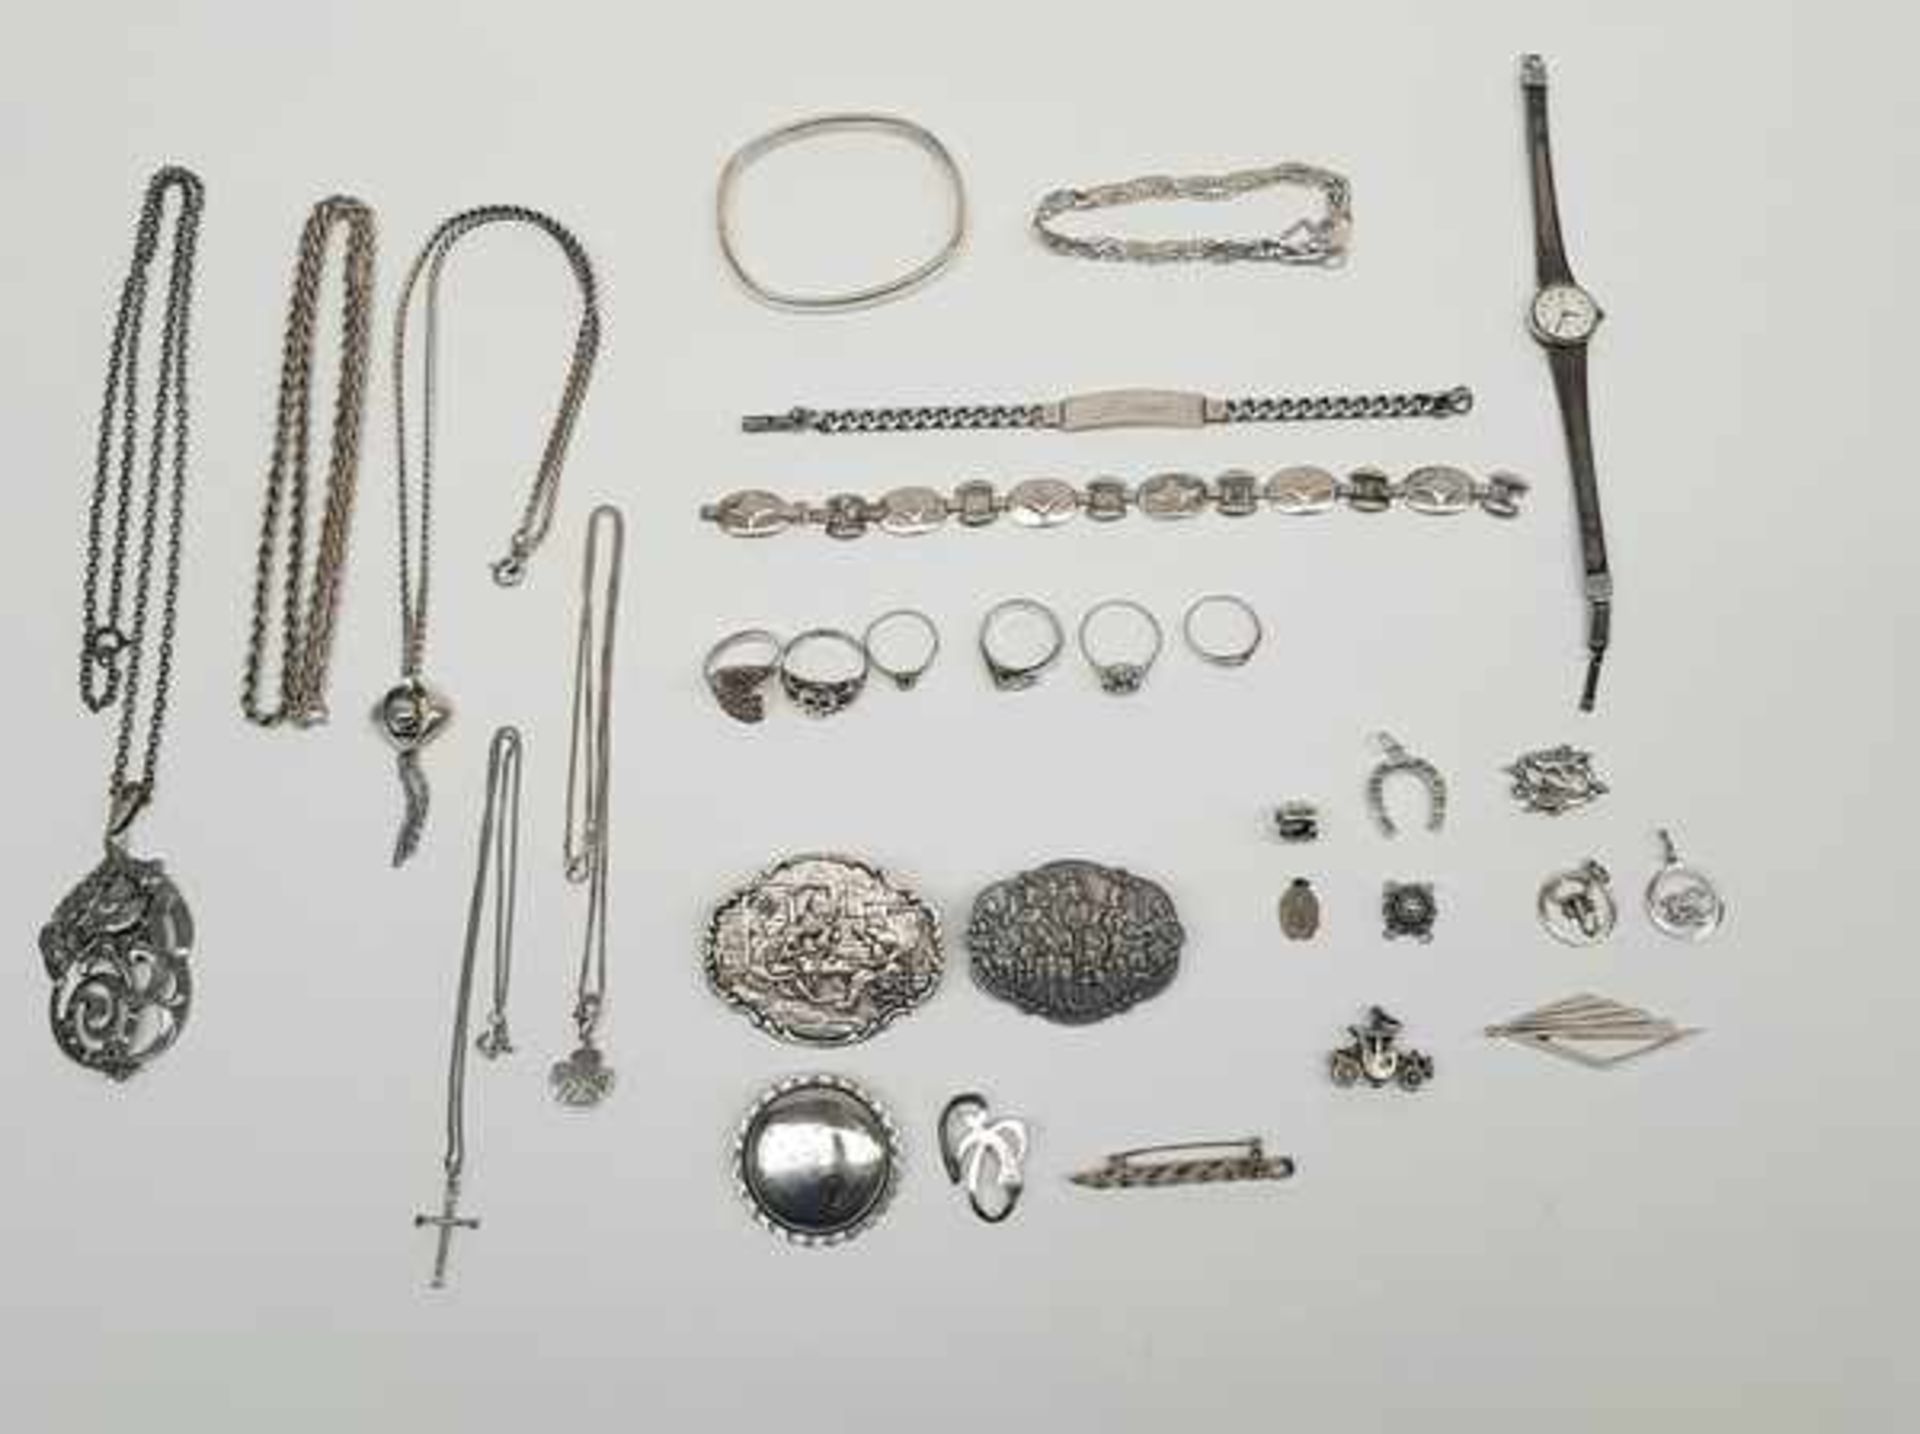 (zilveren sieraden.) Zilver. Divers lot sieraden.Zilver divers lot sieraden waarvan enkele onedel (